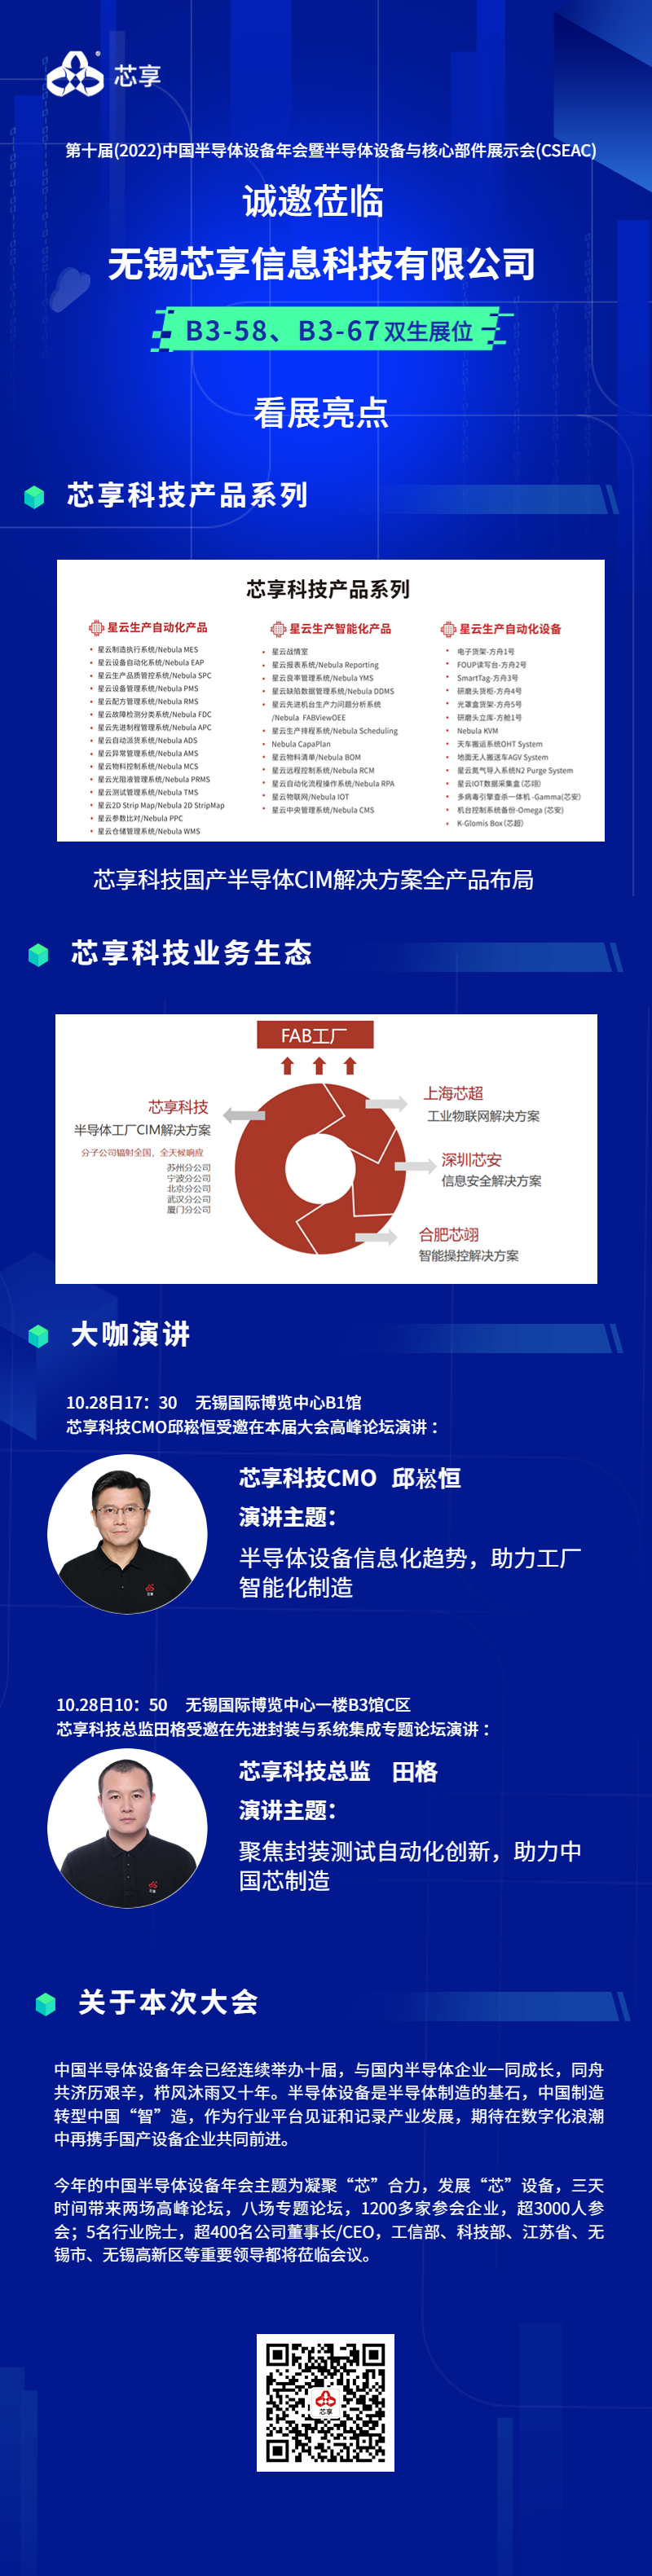 相聚太湖之滨|芯享科技诚邀您莅临第十届中国半导体设备年会